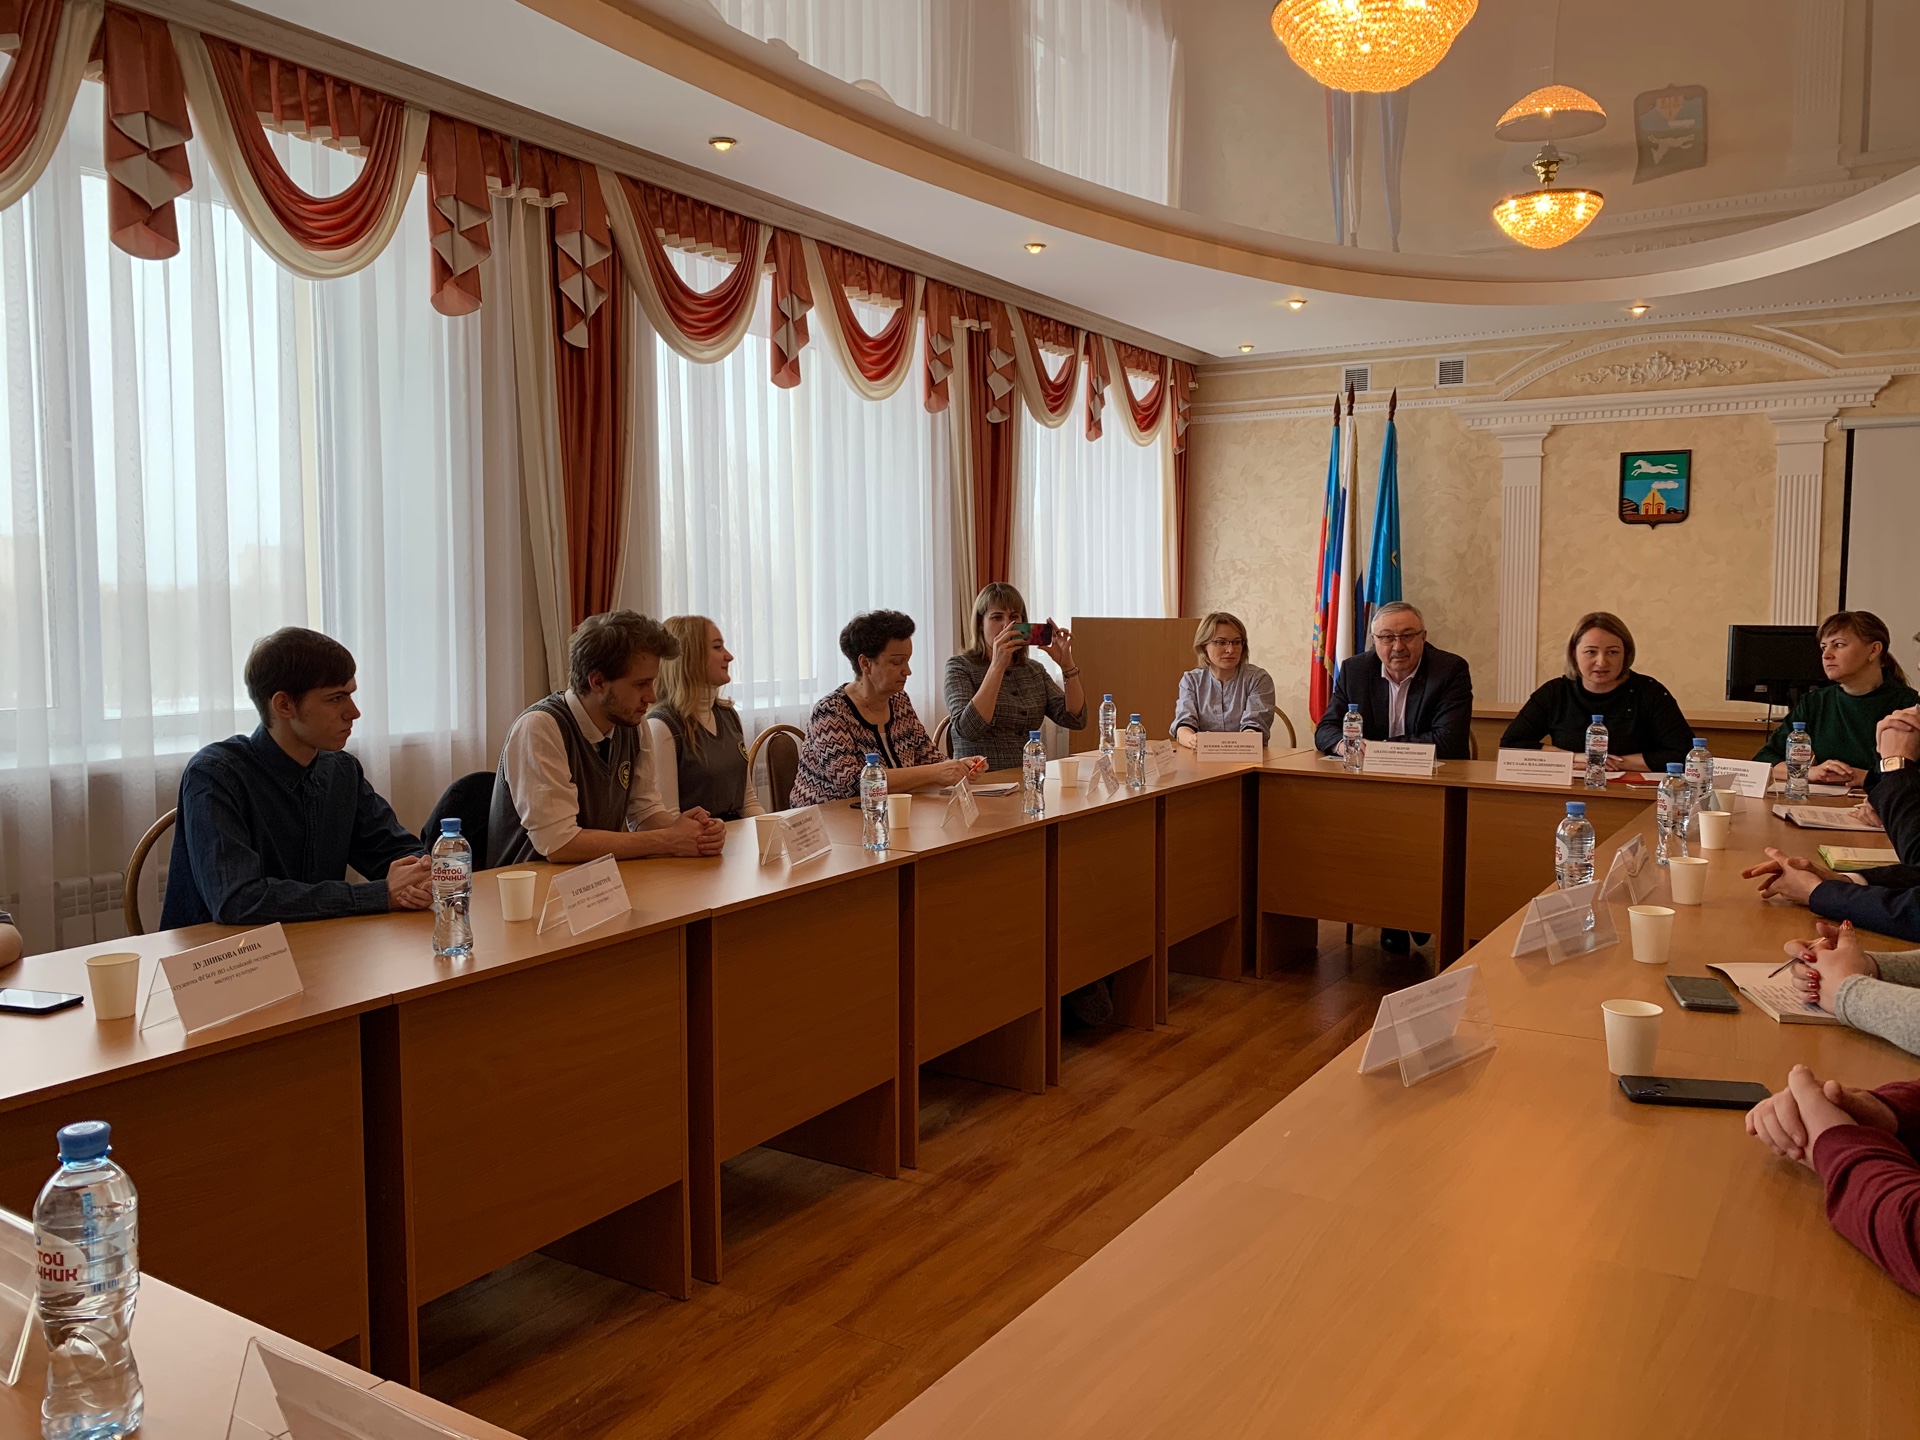 19 февраля избирательная комиссия города Барнаула была приглашена на круглый стол, организованный администрацией Ленинского района